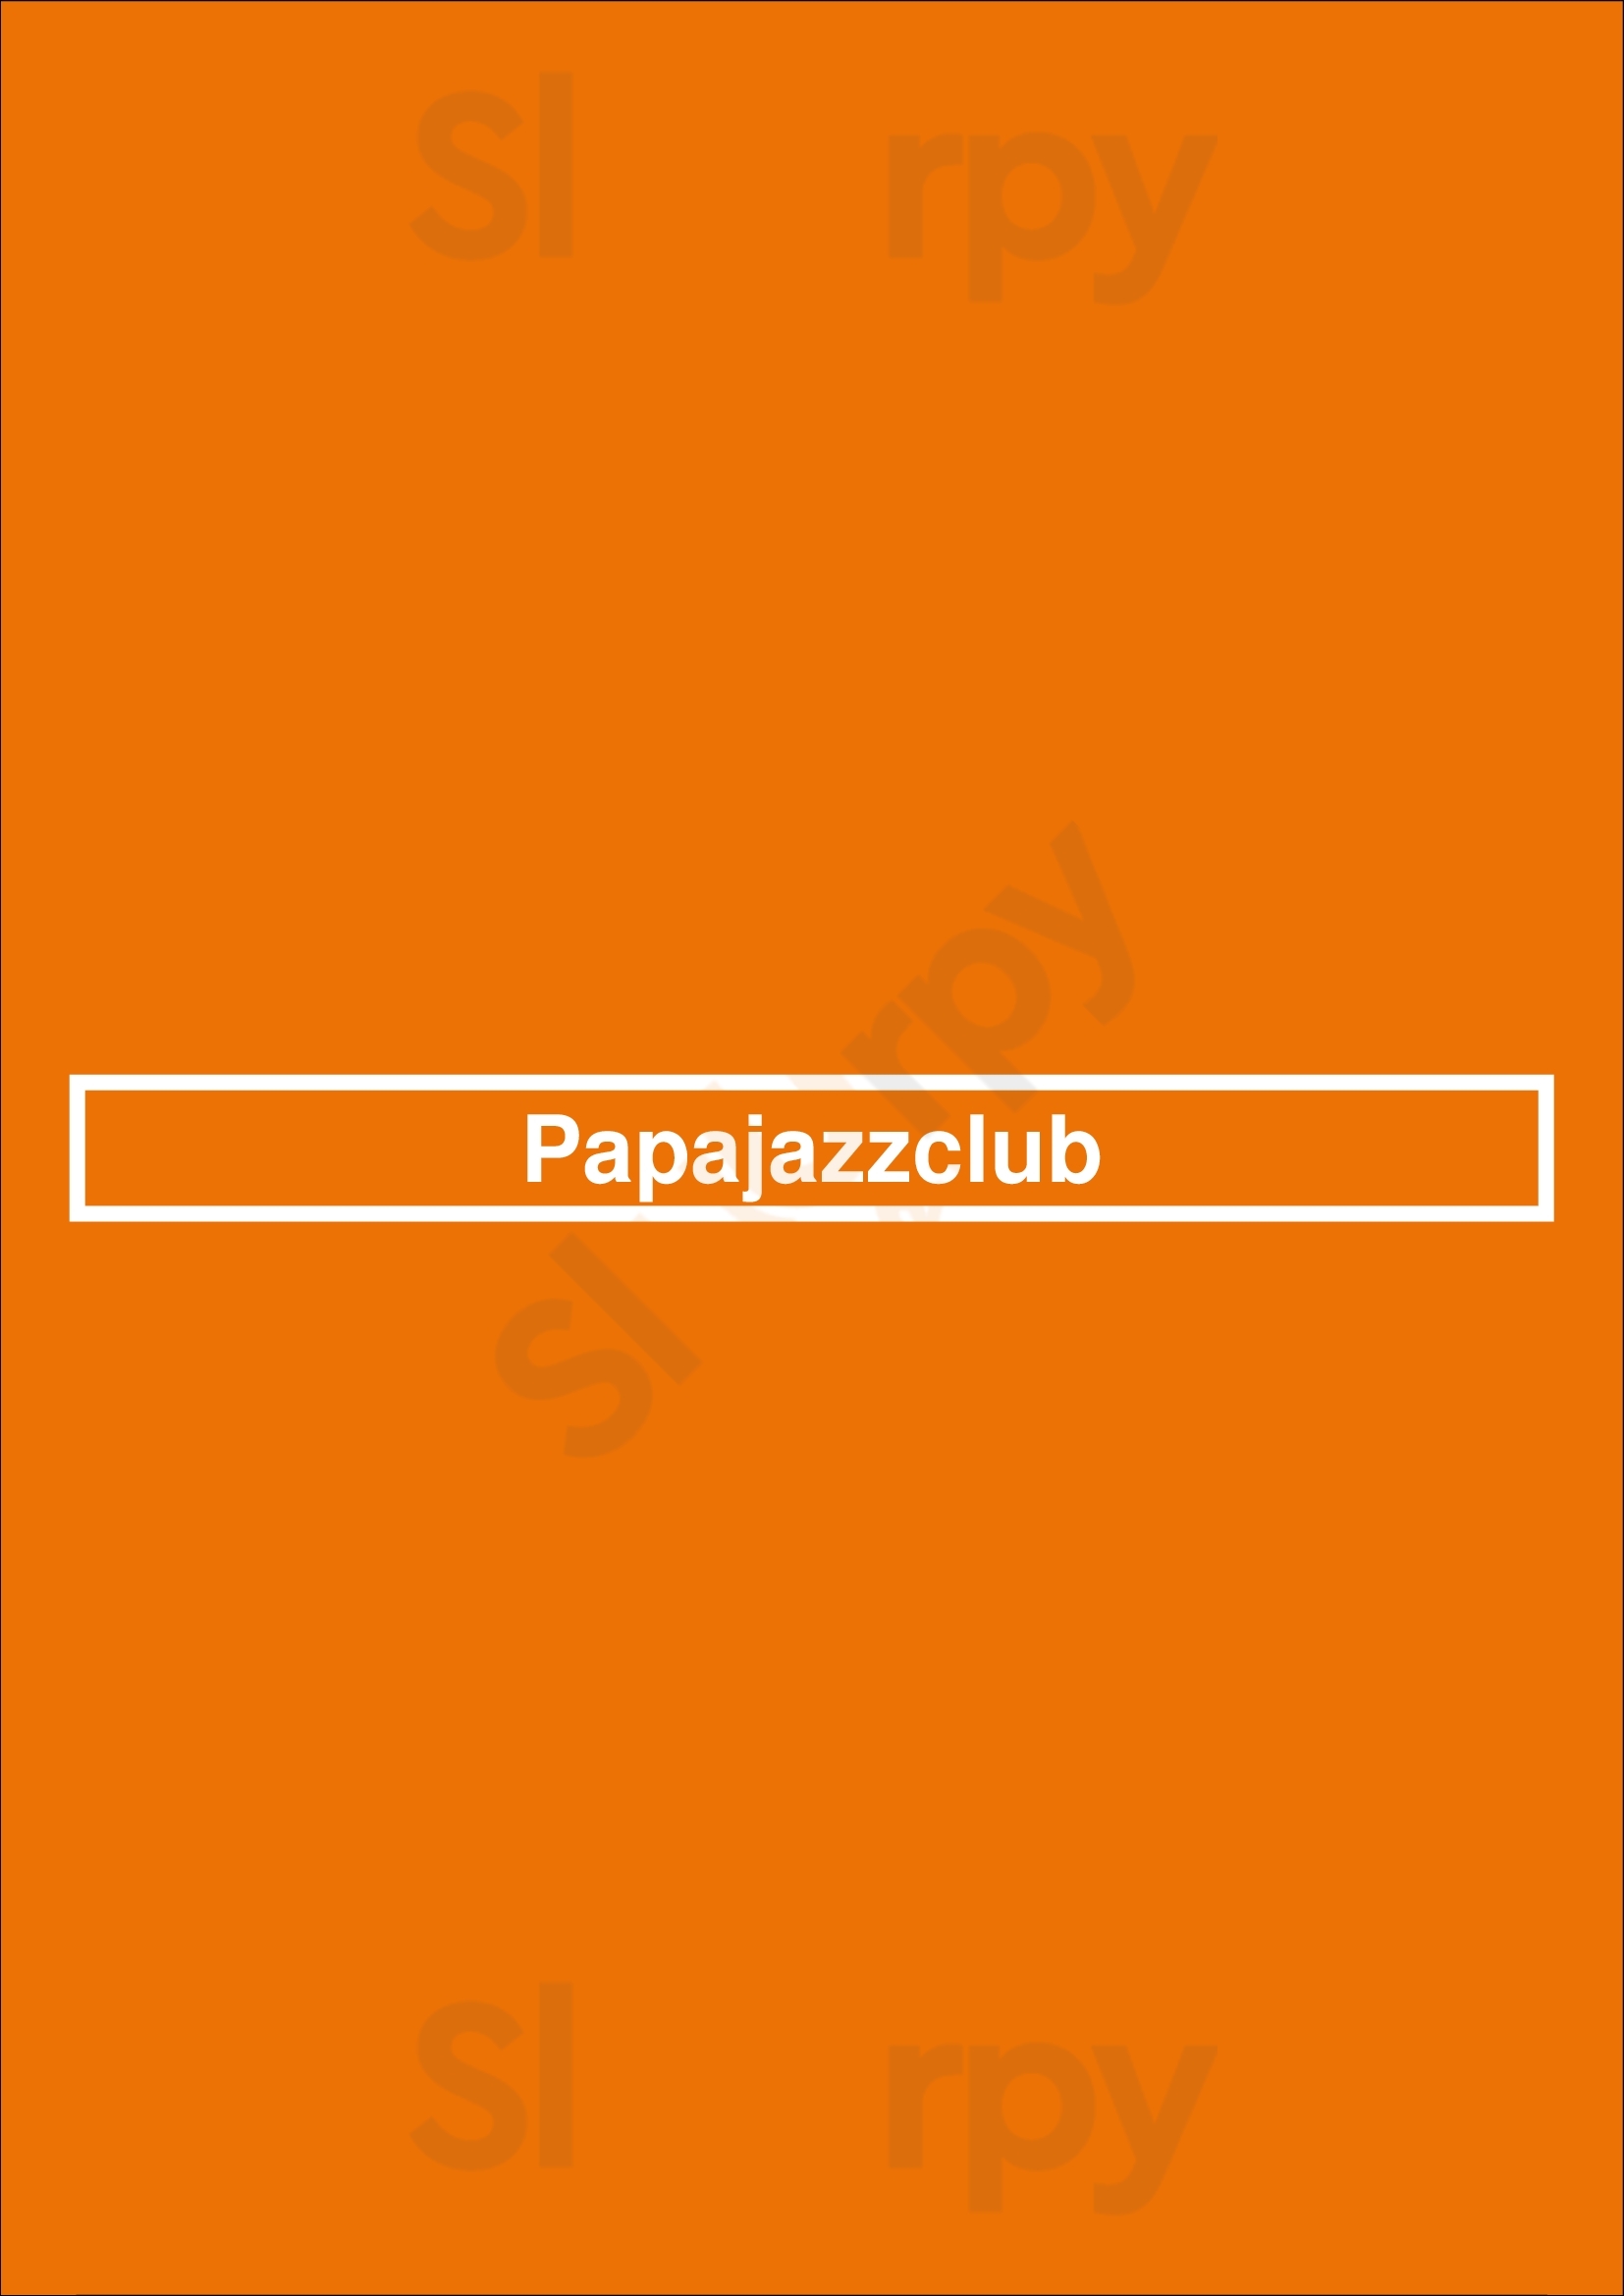 Papajazzclub Paris Menu - 1